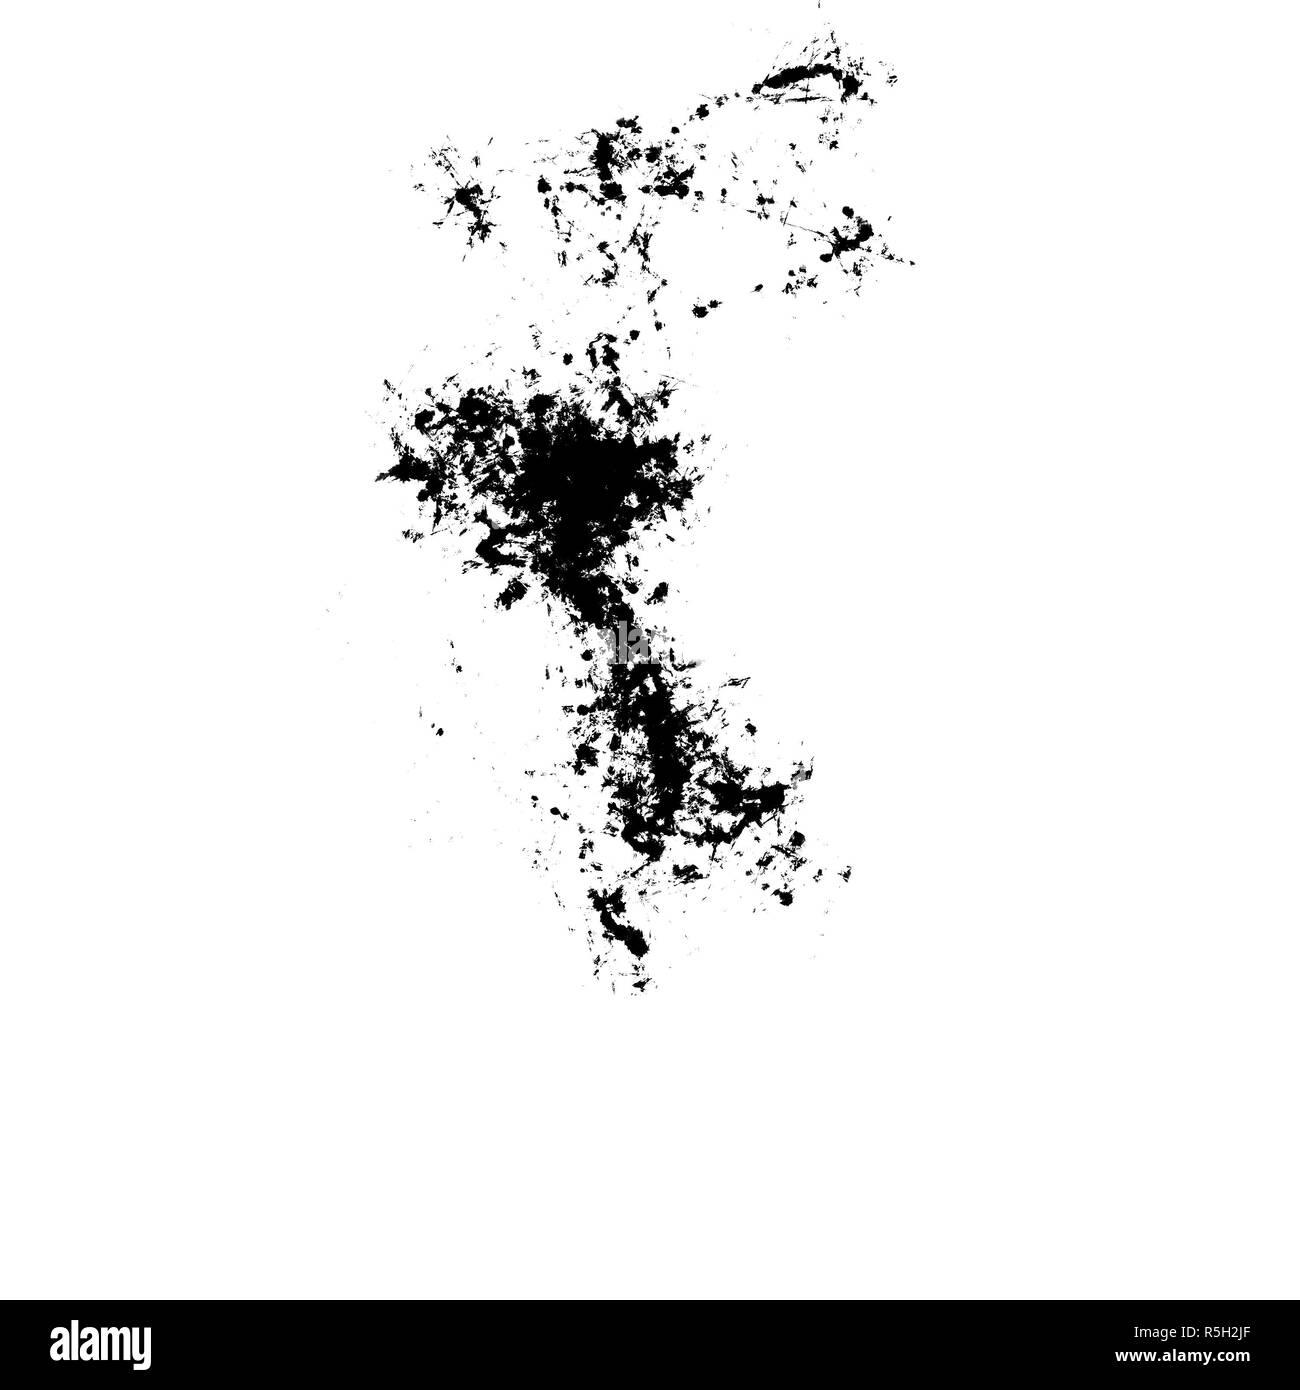 Abstrakte schwarze Flecken auf weißem Papier Stockfotografie - Alamy